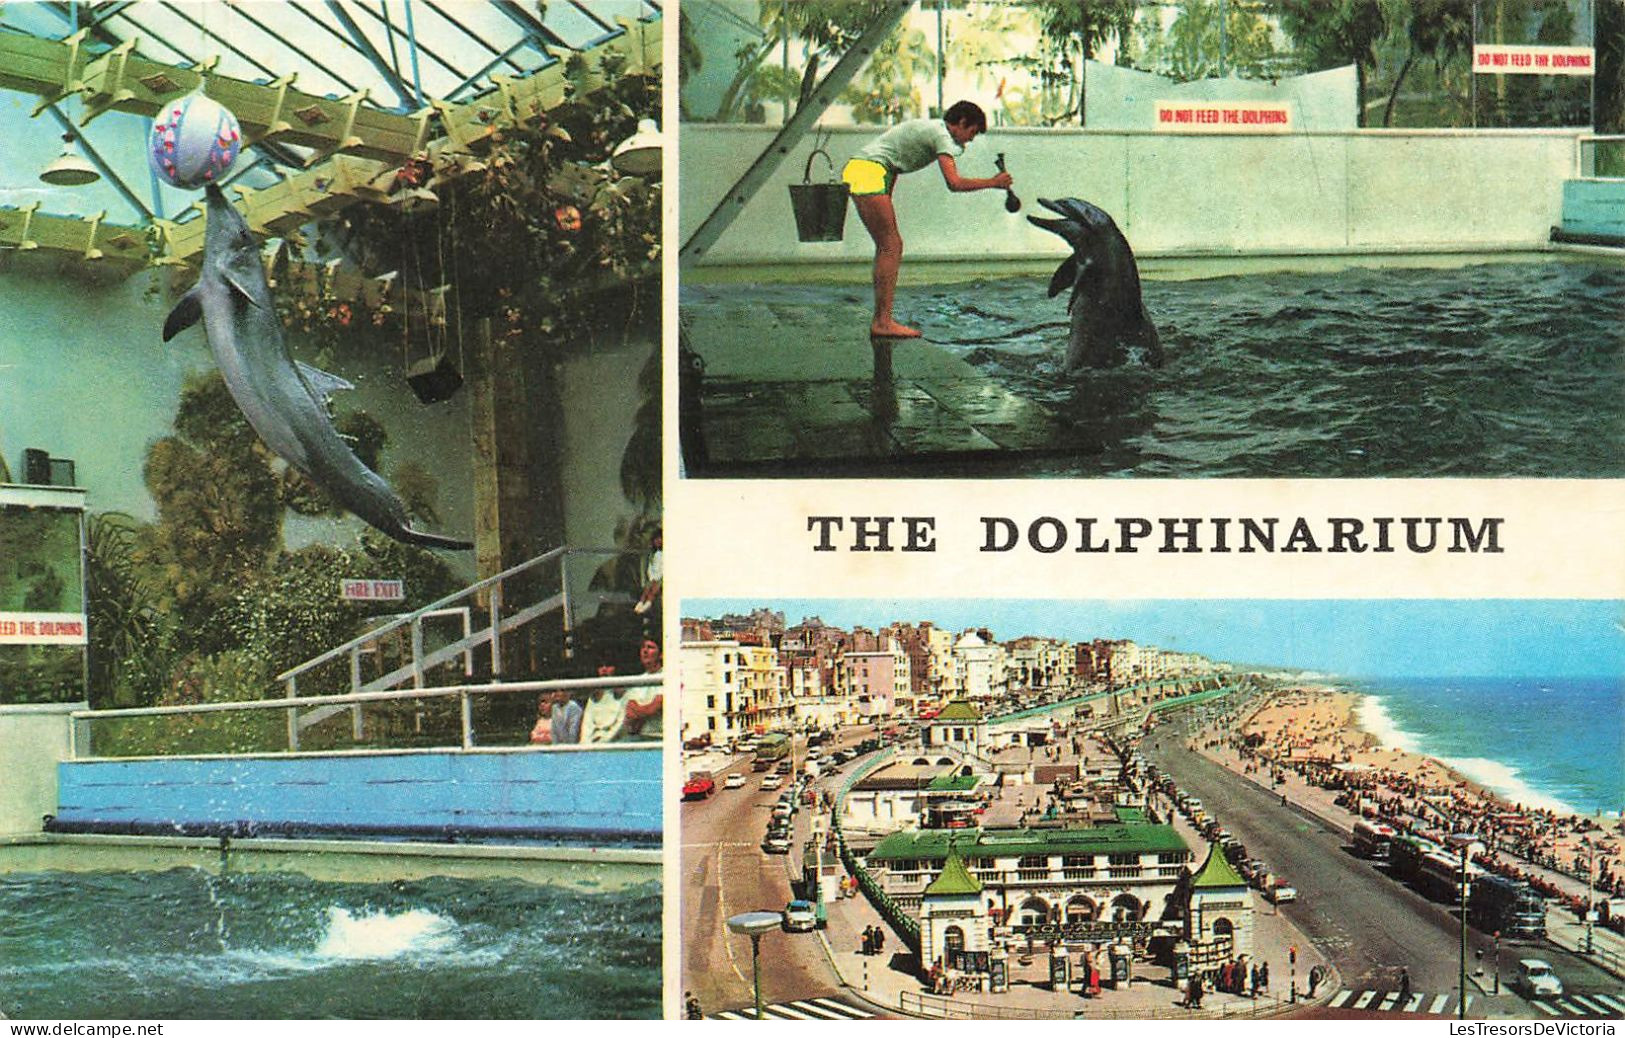 ANIMAUX ET FAUNE - The Dolphinarium - Colorisé - Carte Postale Ancienne - Delphine